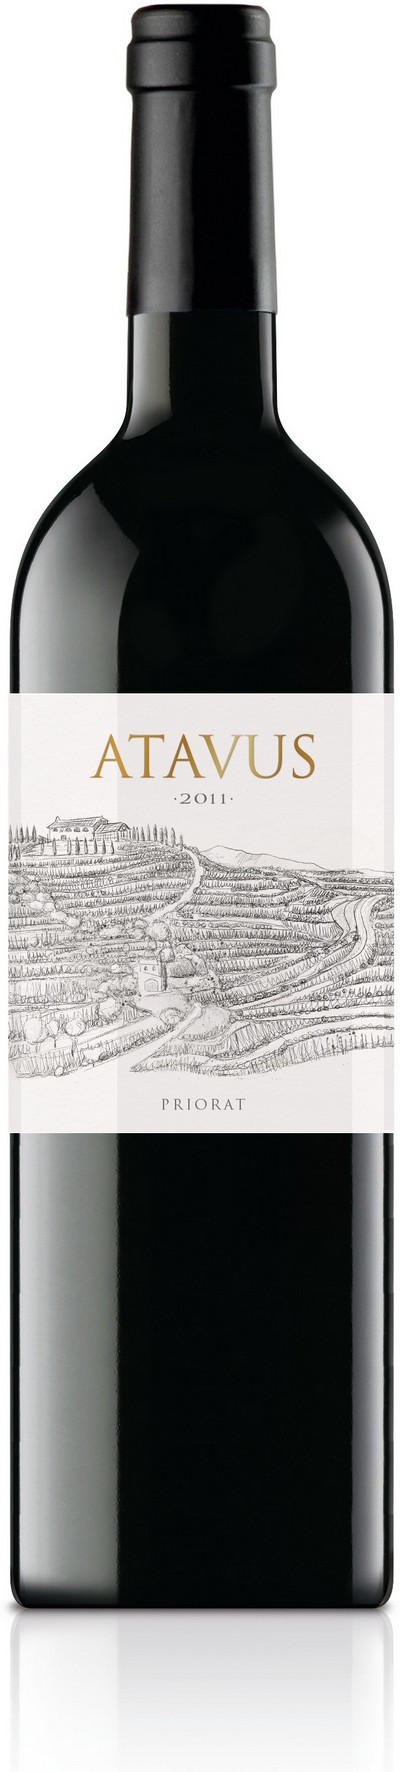 atavus-2011